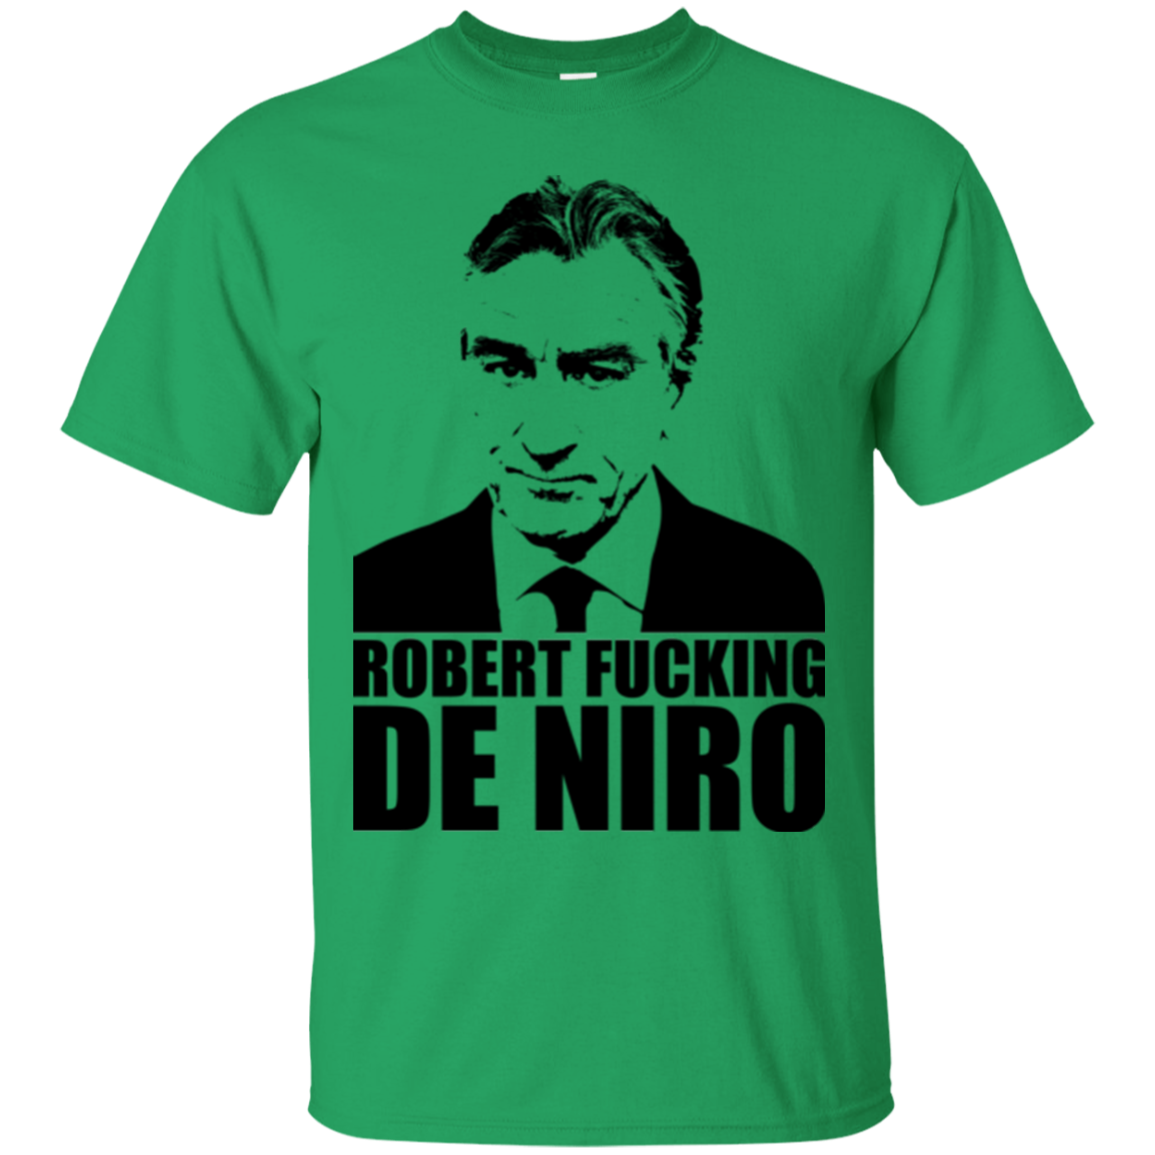 Robert Fucking DeNiro T-Shirt